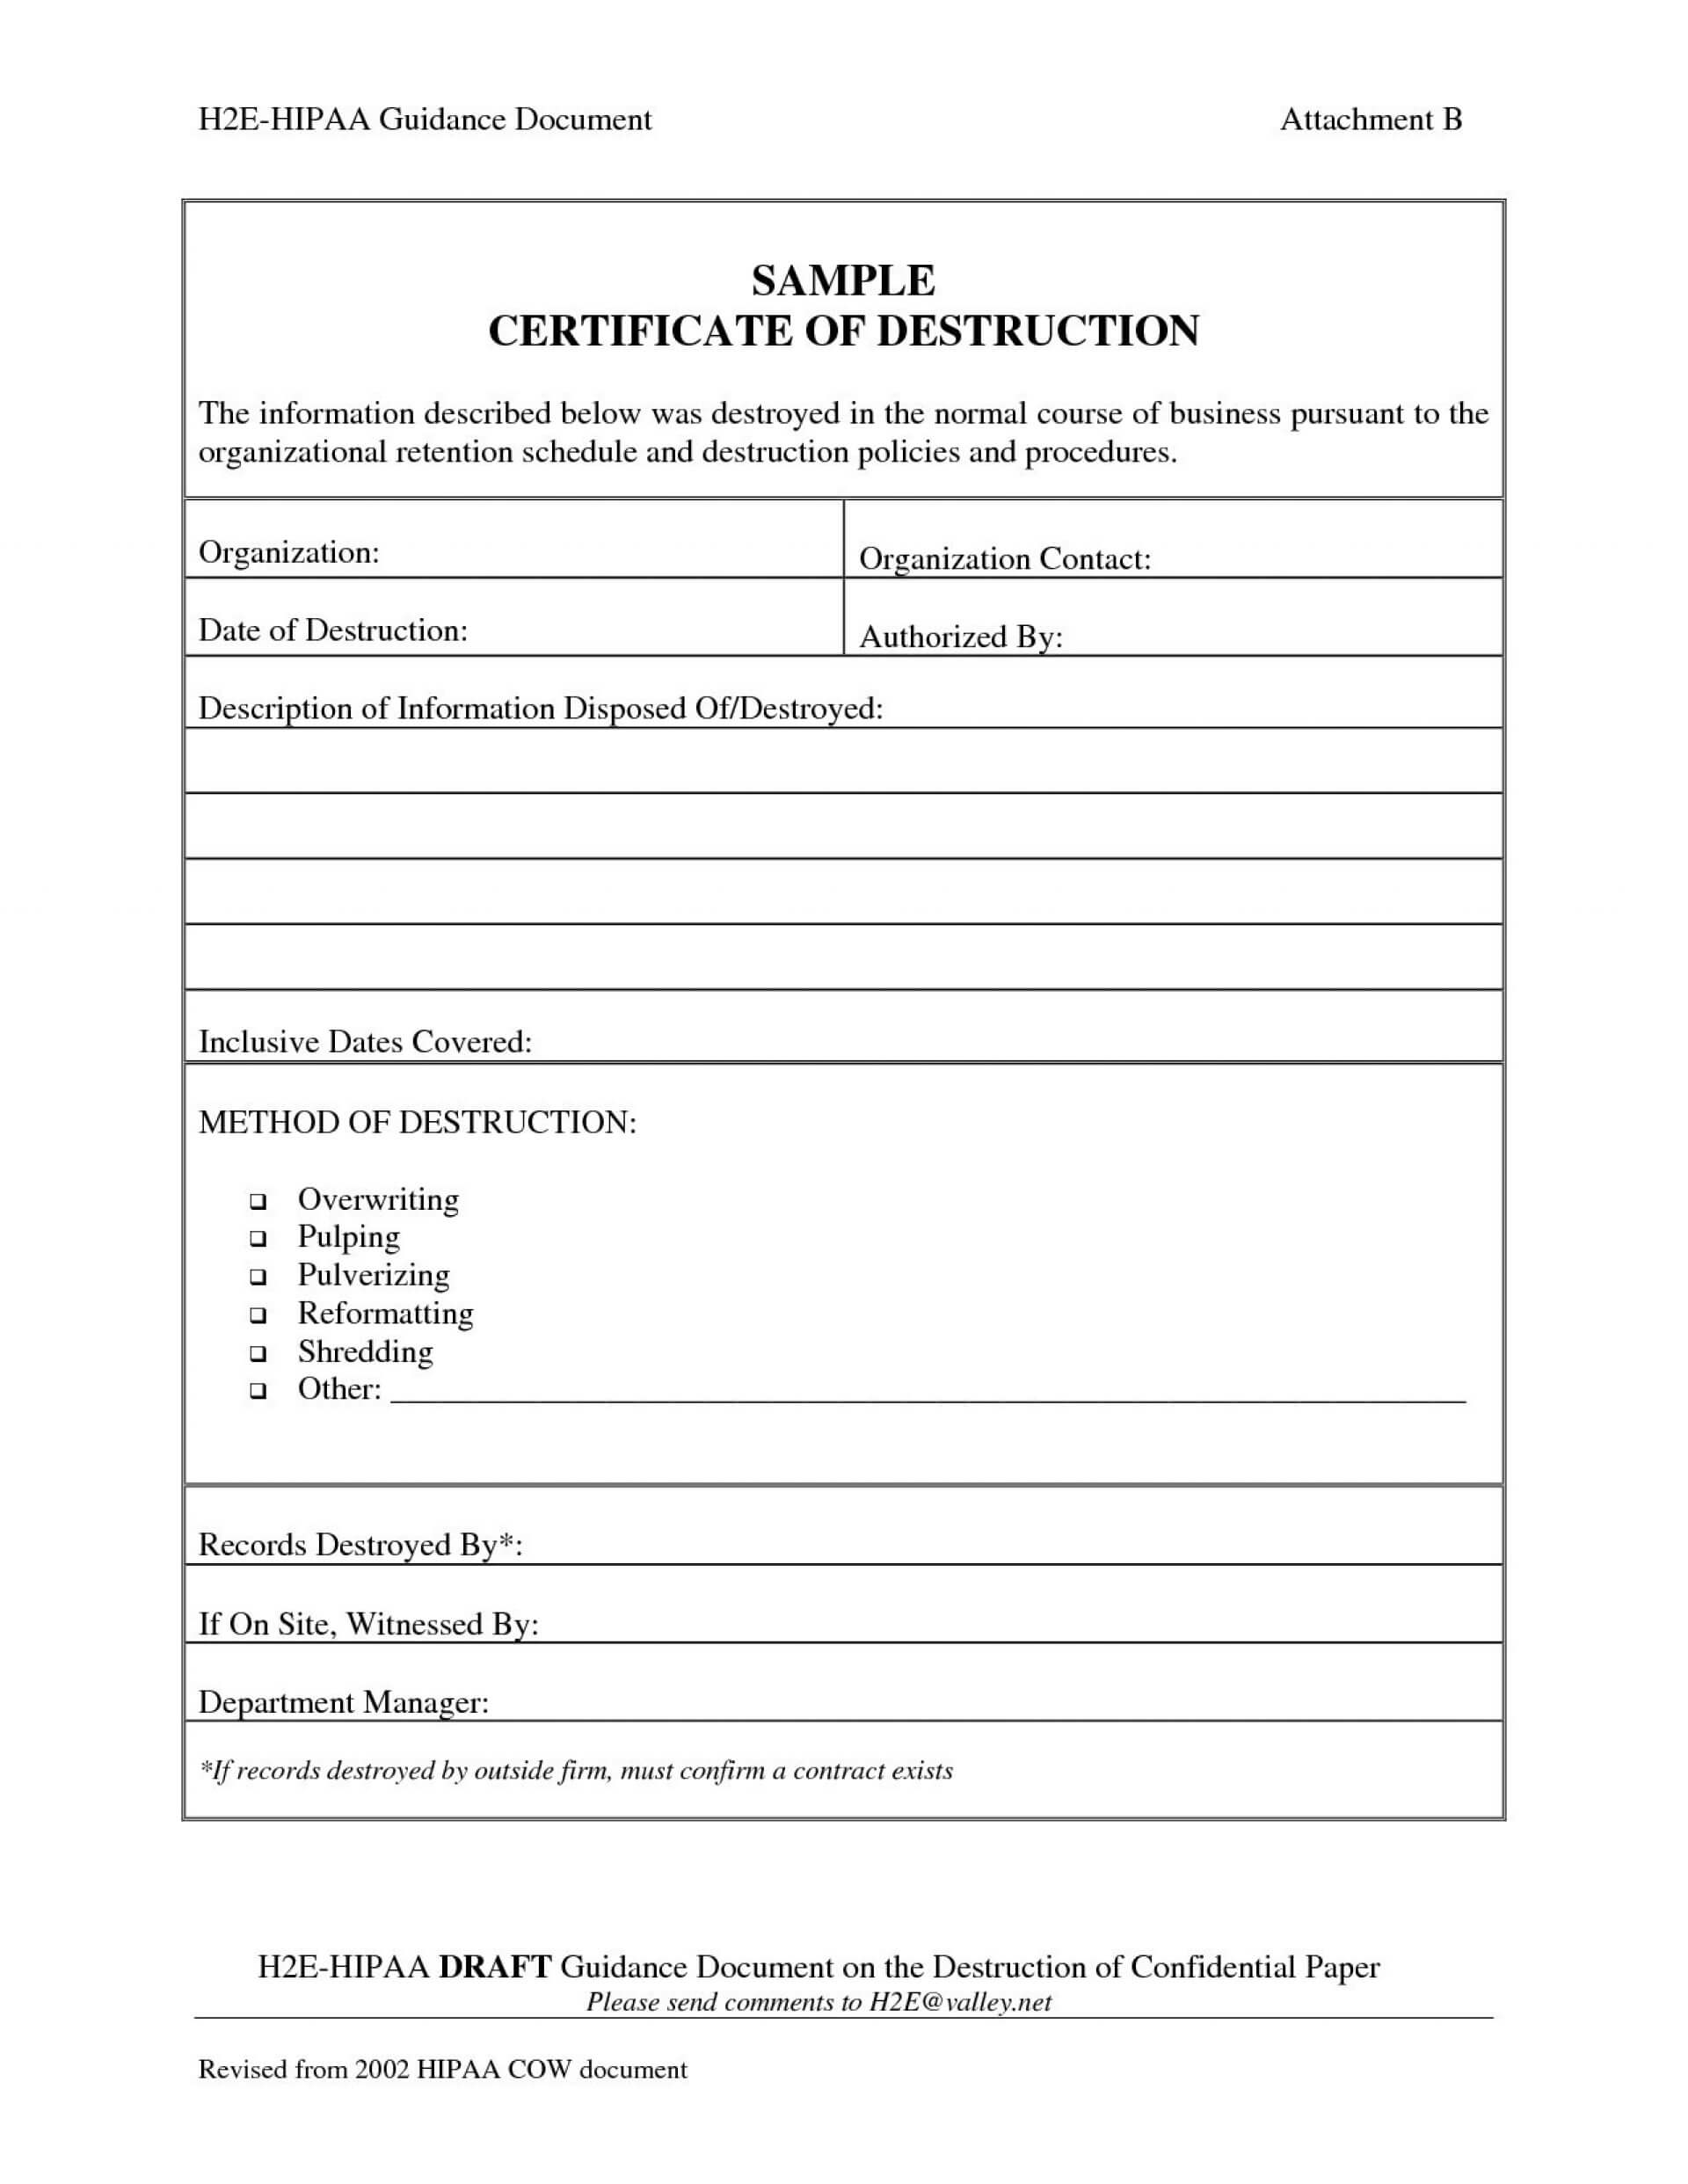 005 Certificate Of Destruction Template Ideas Exceptional Inside Certificate Of Destruction Template